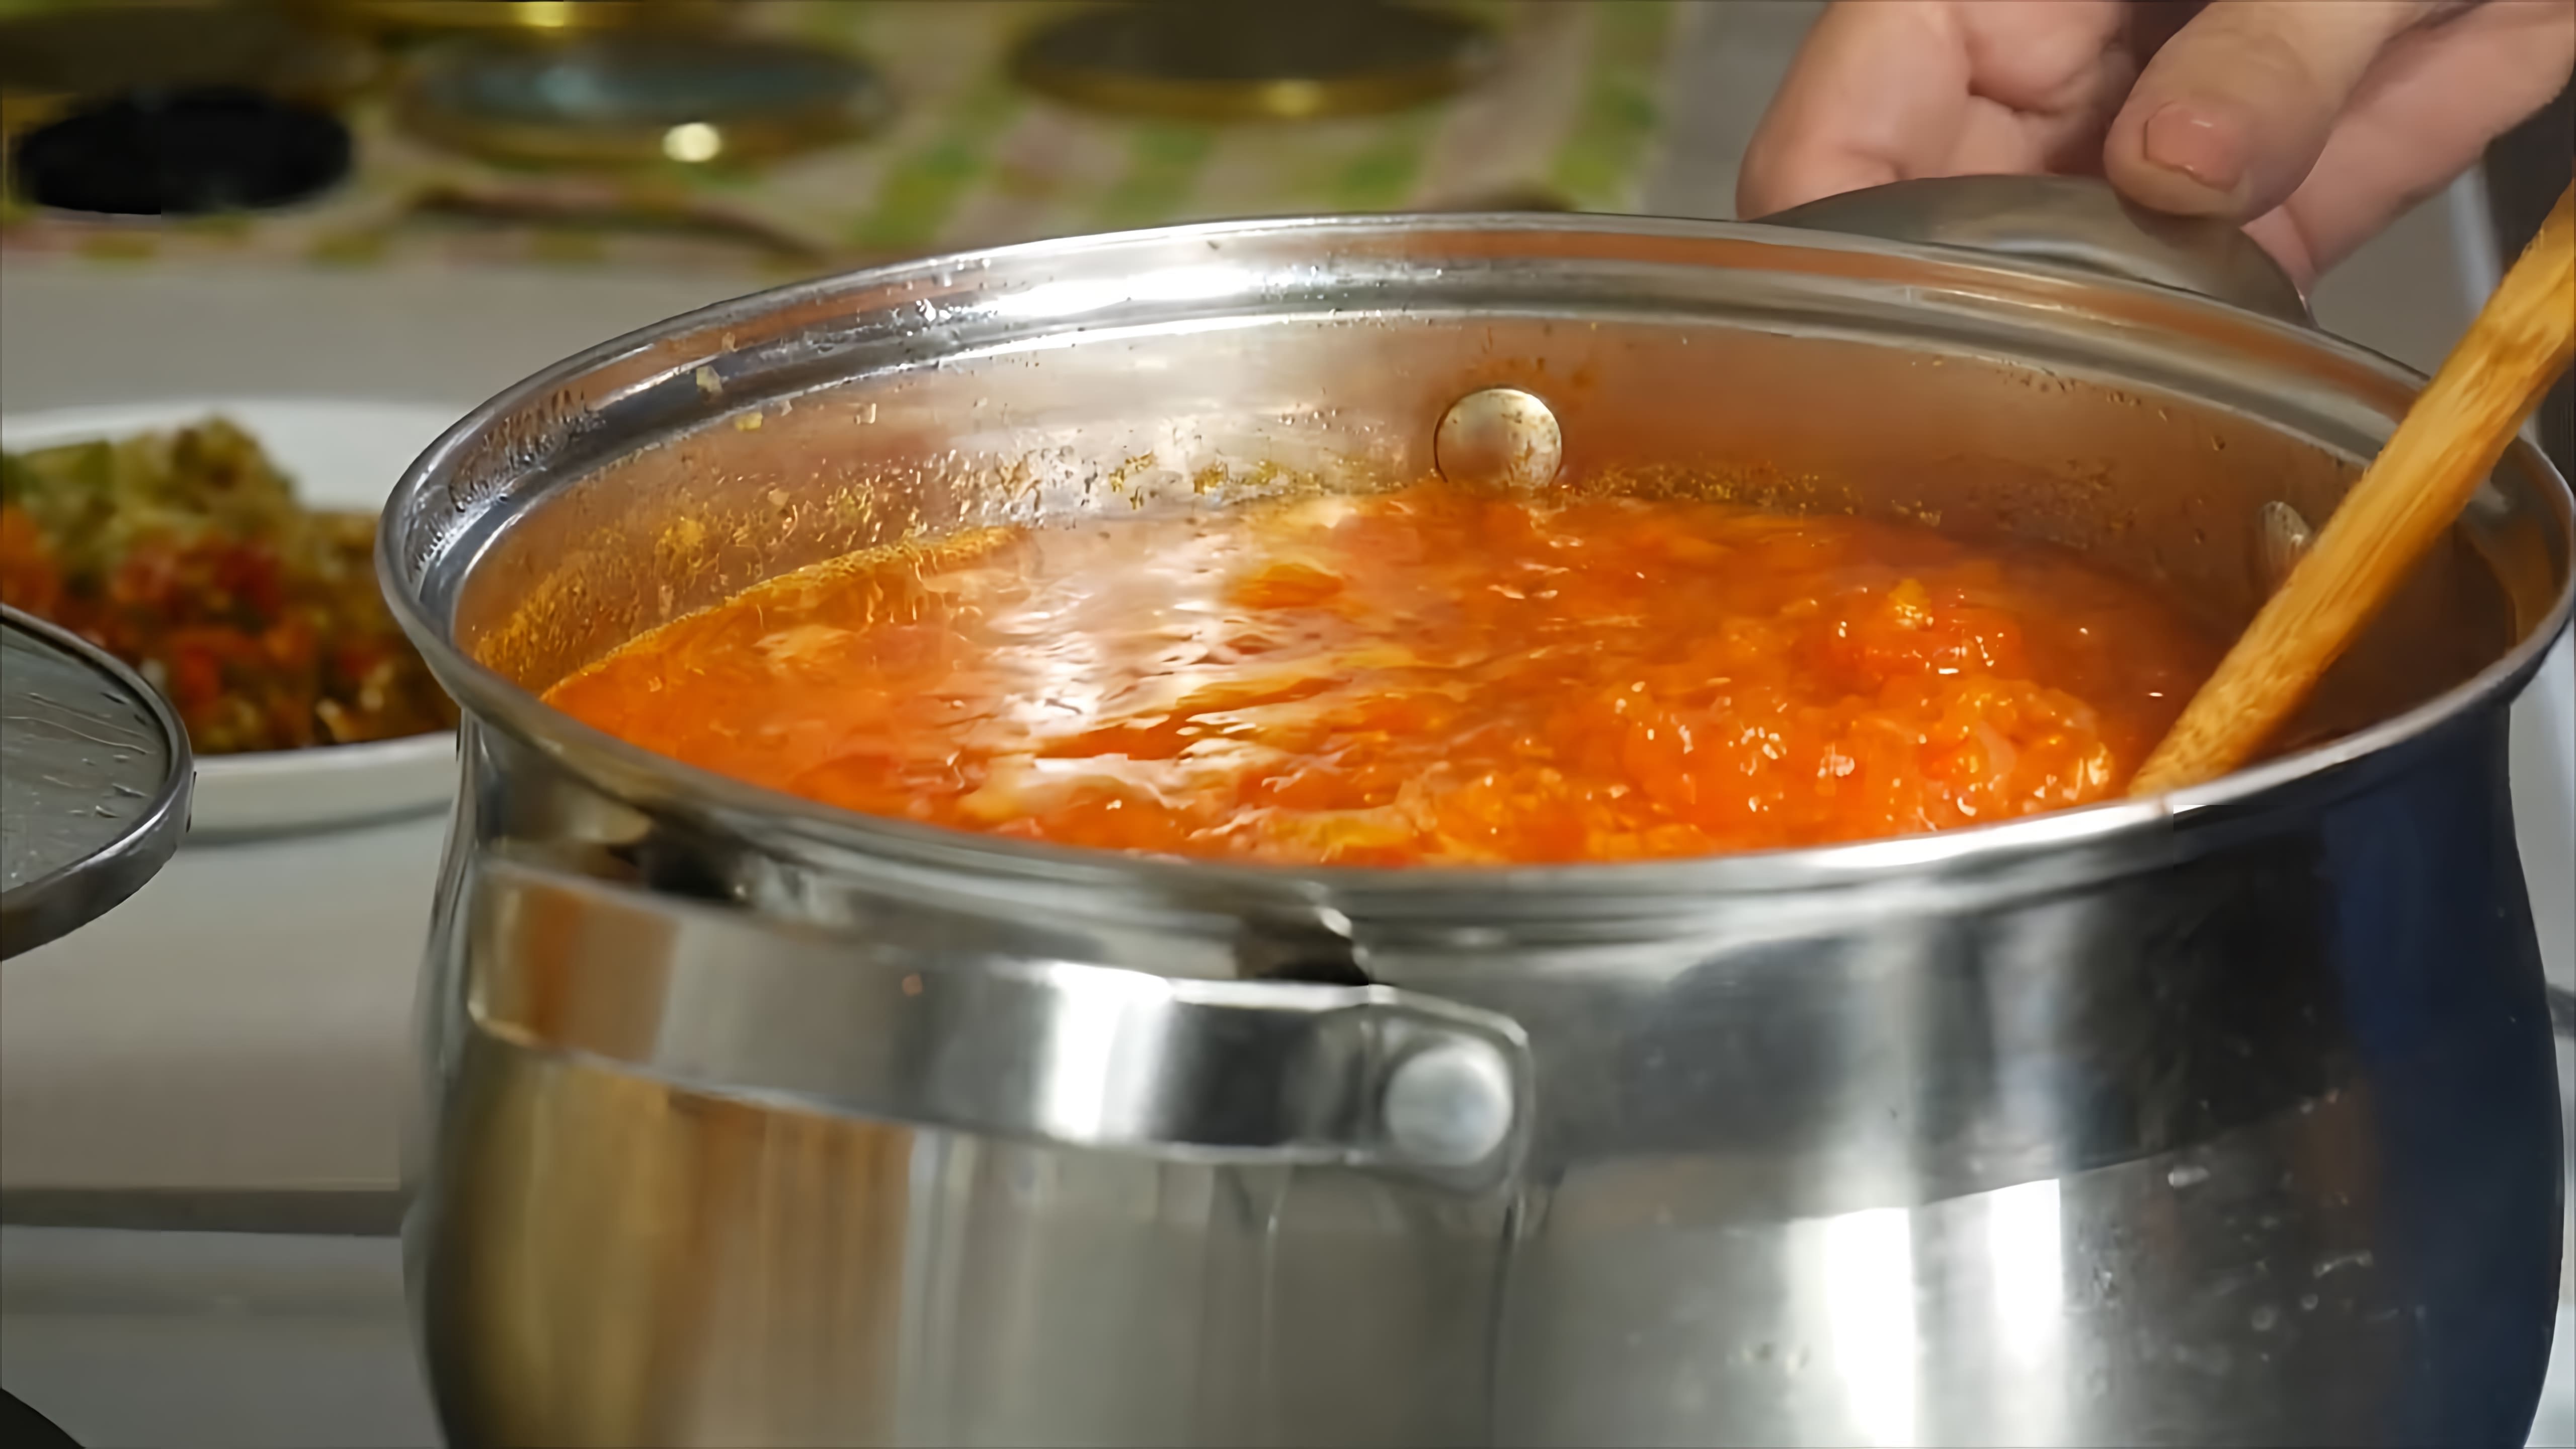 В этом видео демонстрируется процесс приготовления остро-сладкой аджики из помидоров, перца, моркови, яблок, чеснока и уксуса